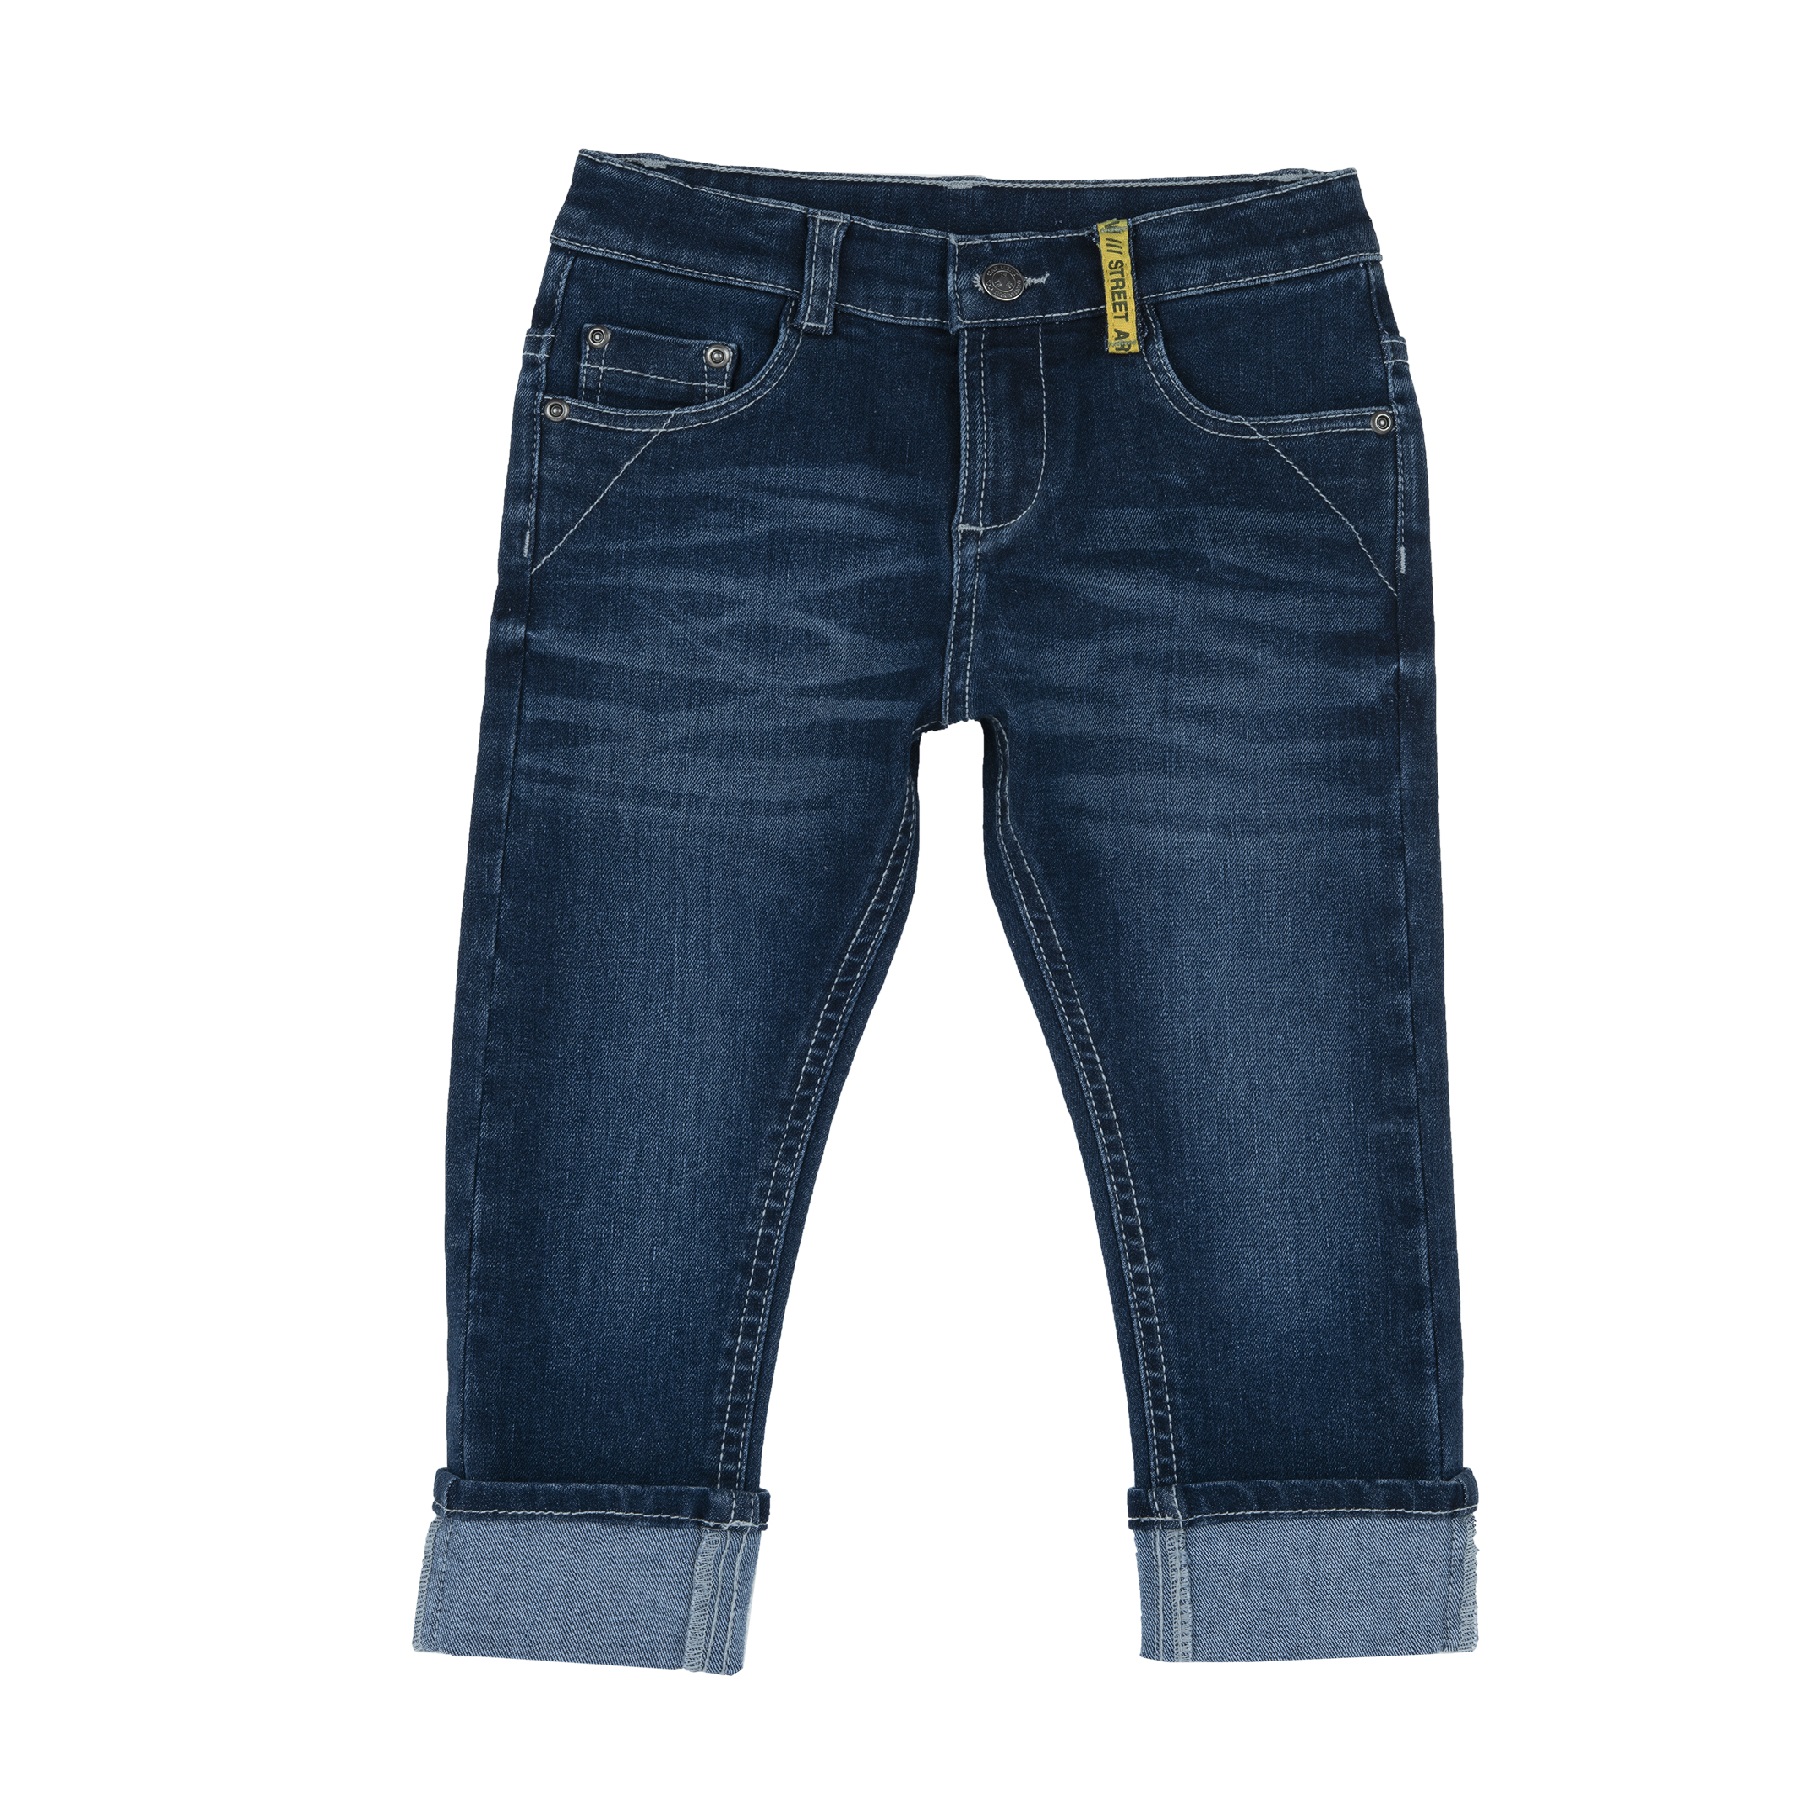 Pantaloni copii Chicco, albastru inchis, 08687-63MC